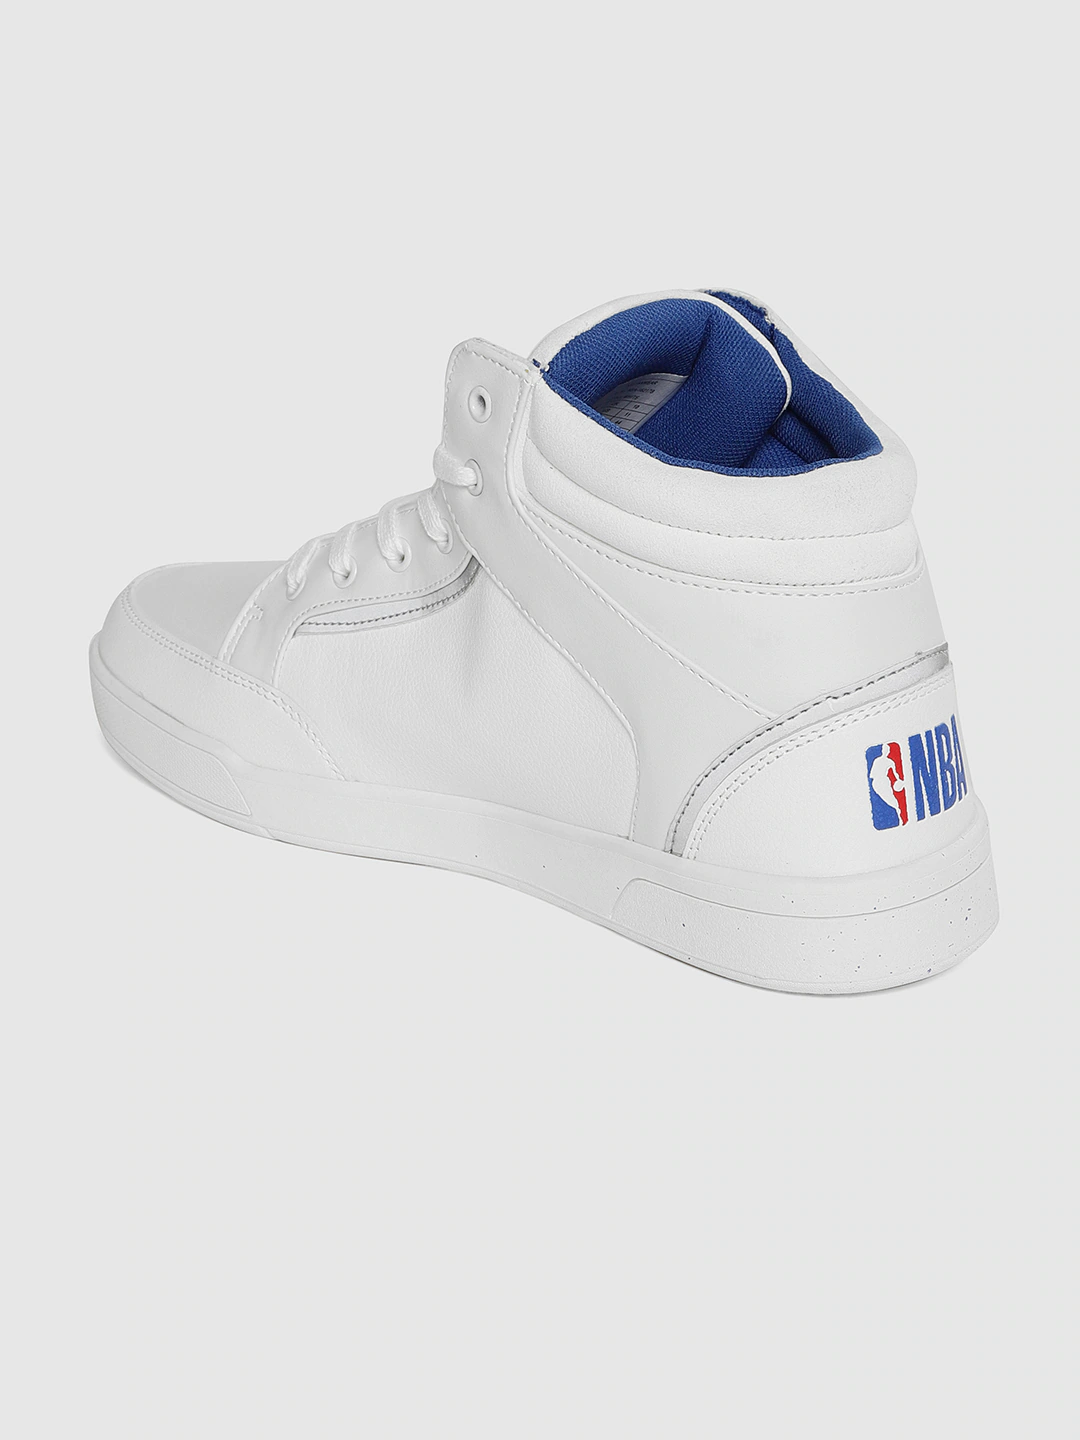 nba men white sneakers